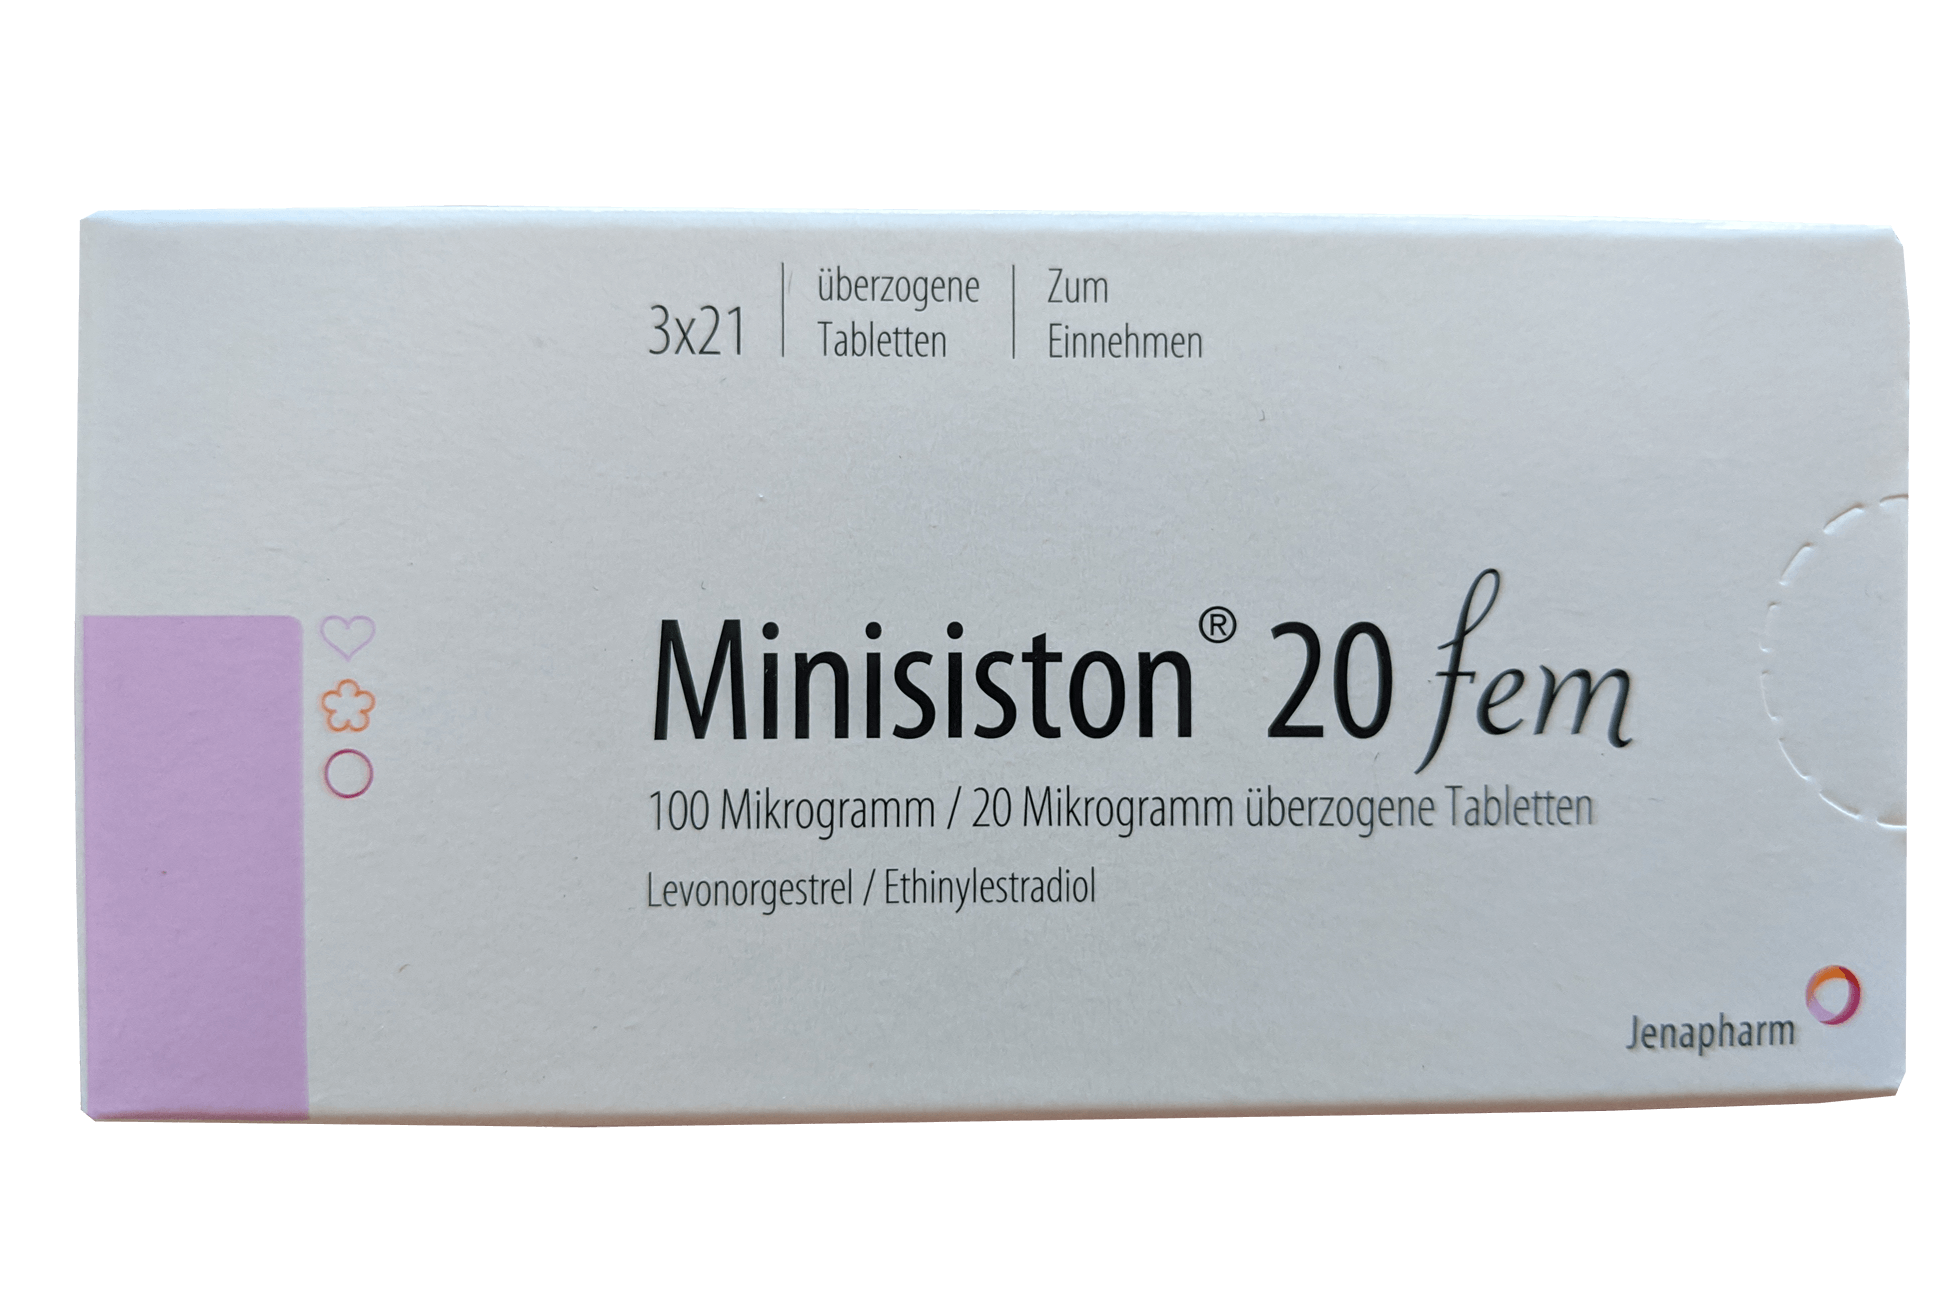 Pille Minisiston 20 fem 